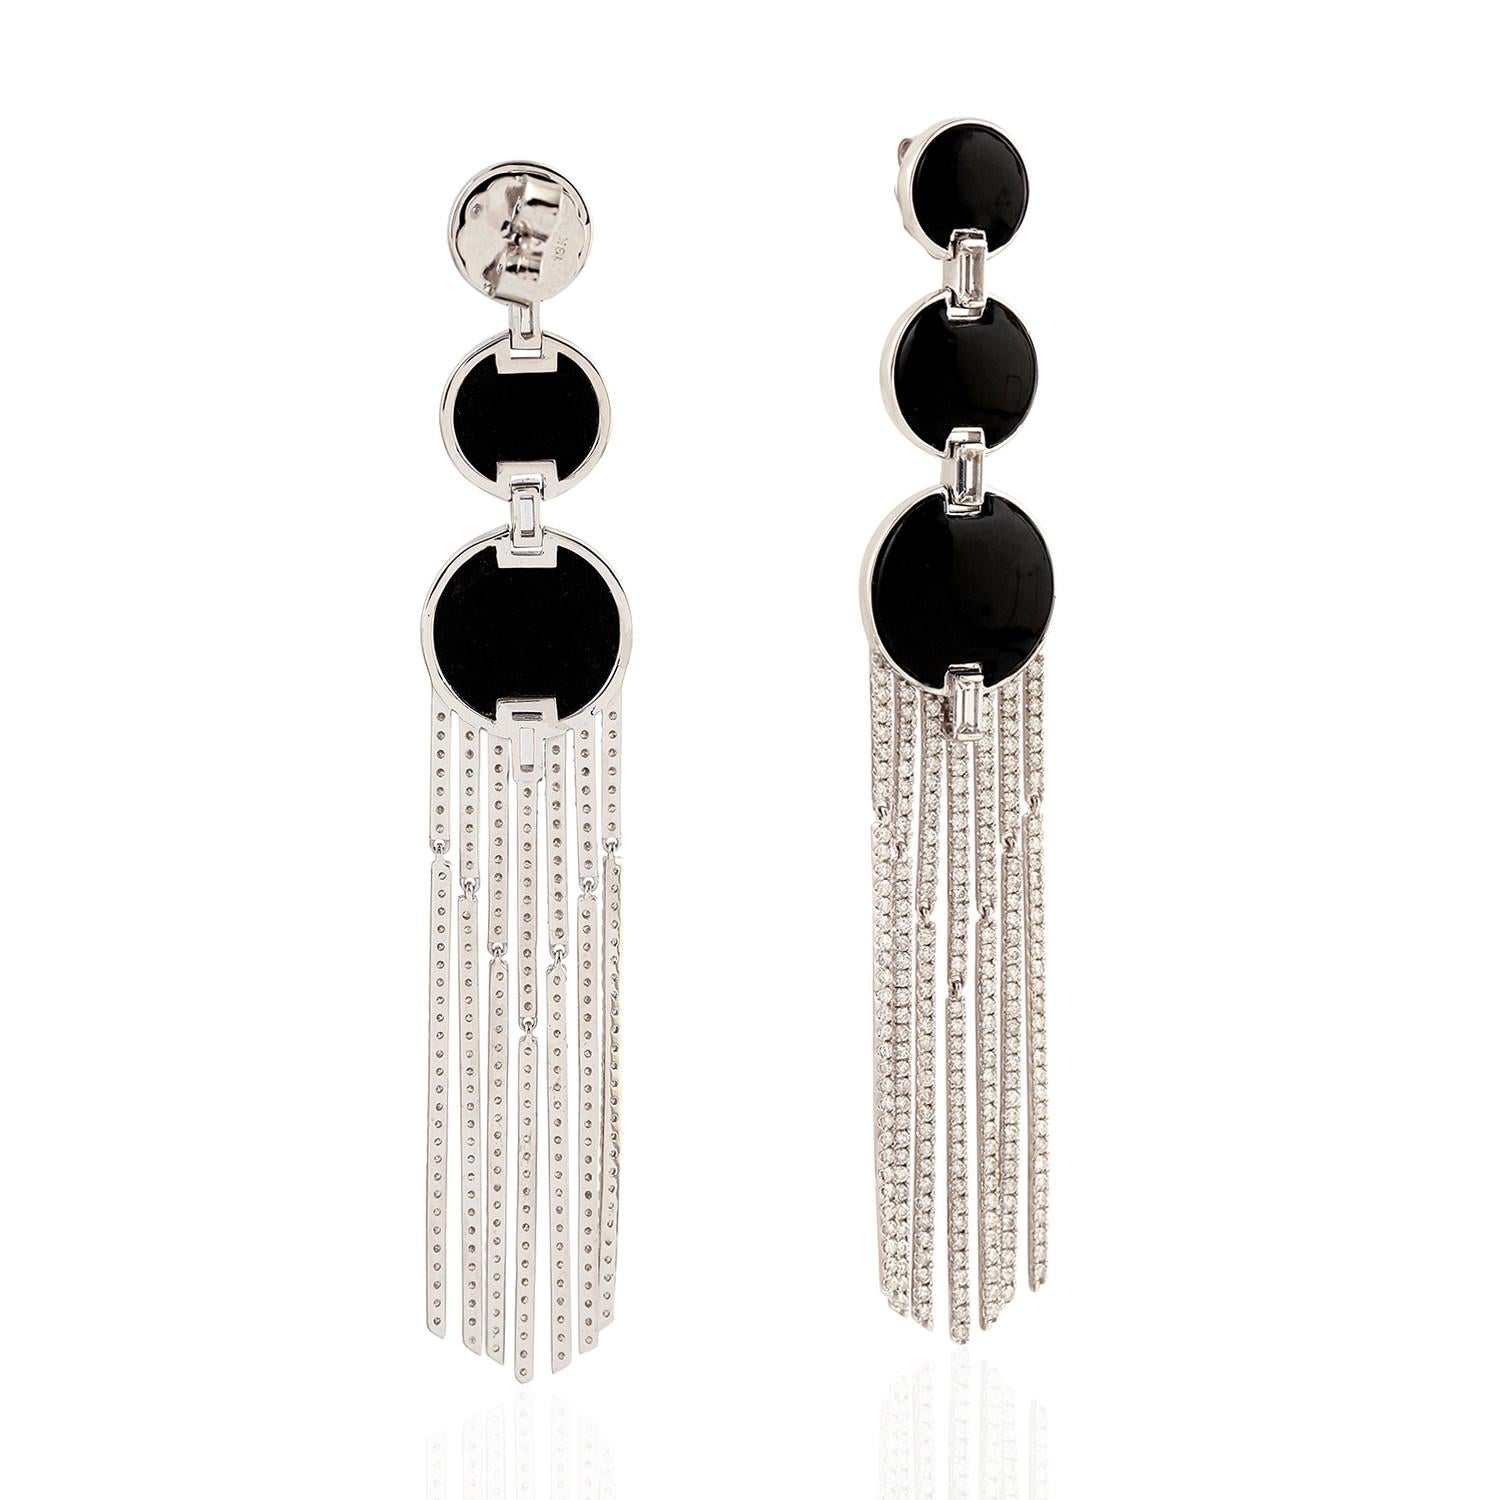 Art Deco 3 Tier Black Onyx Dangle Earrings With Diamond Tassels For Sale